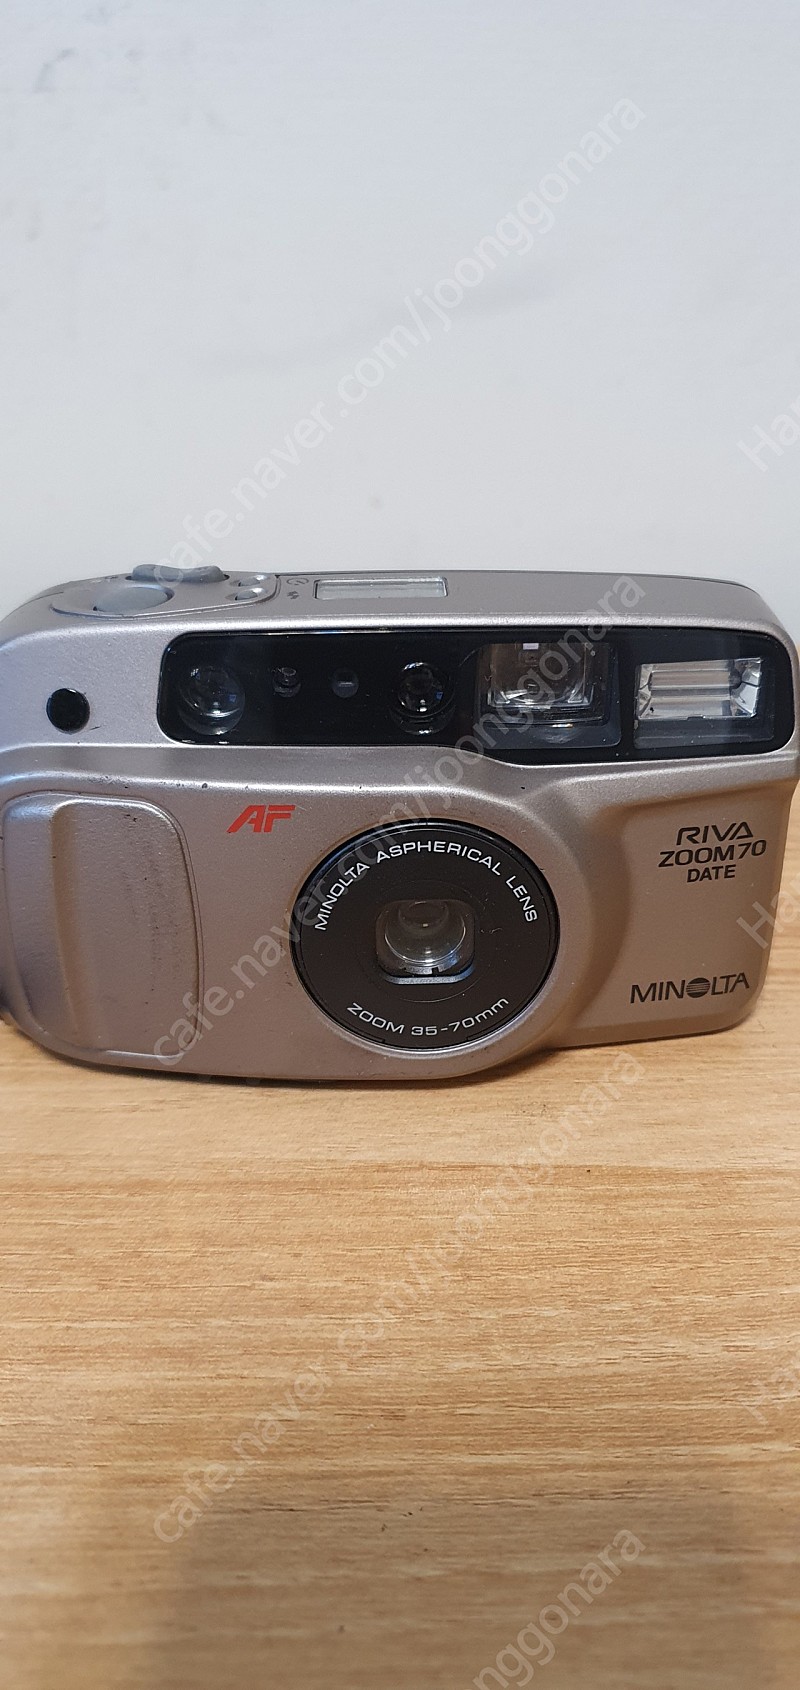 미놀타 RIVA zoom 70 DATE필름카메라 판매합니다.